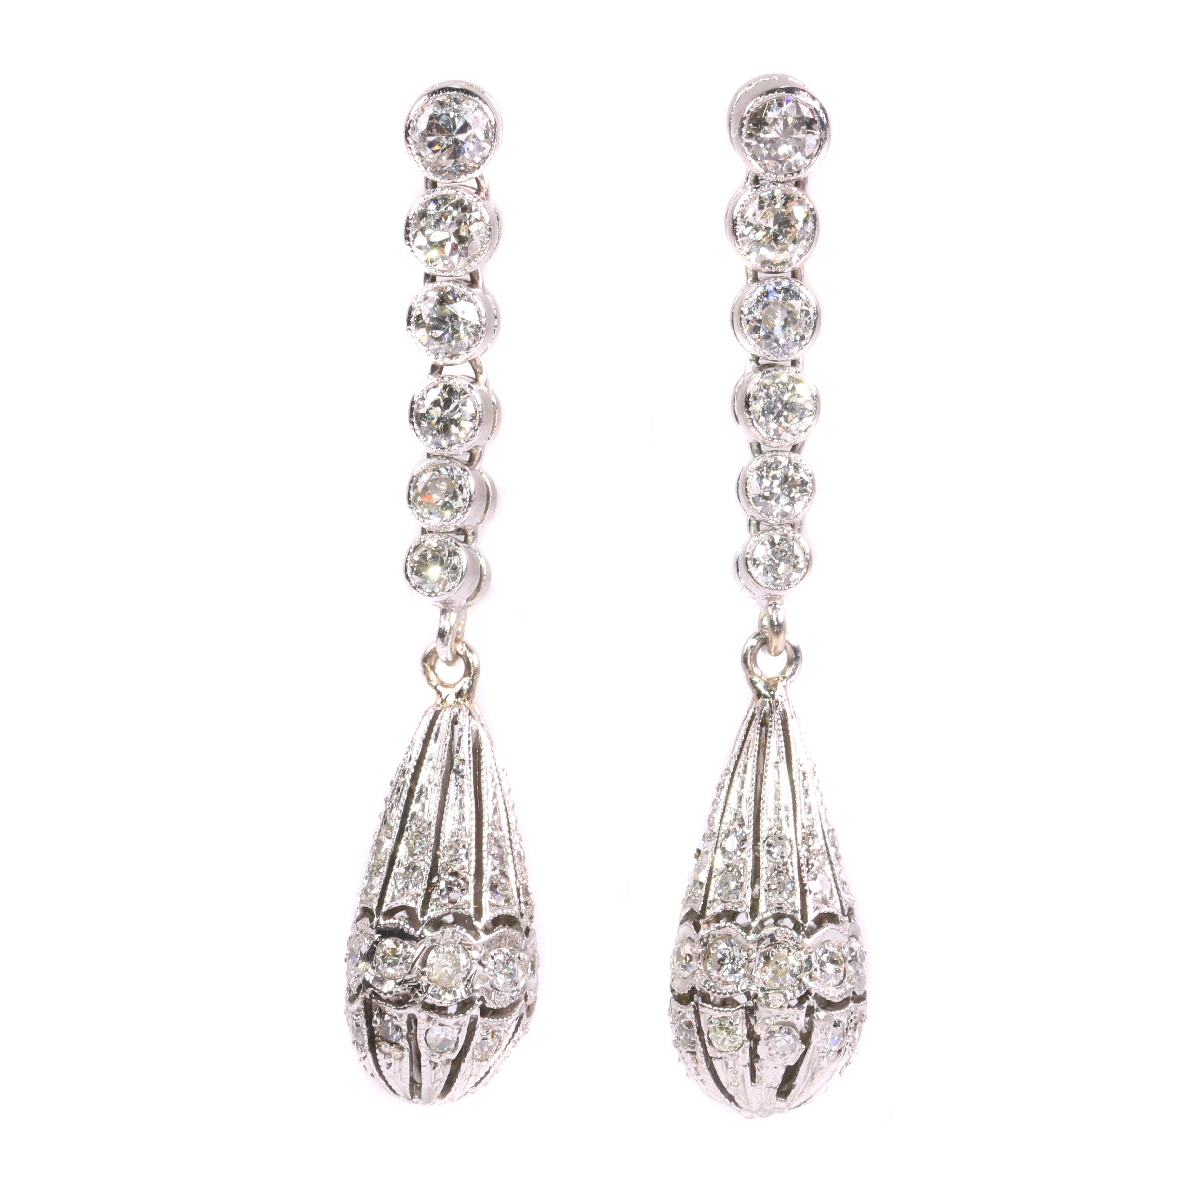 Art Deco diamond pendent earrings